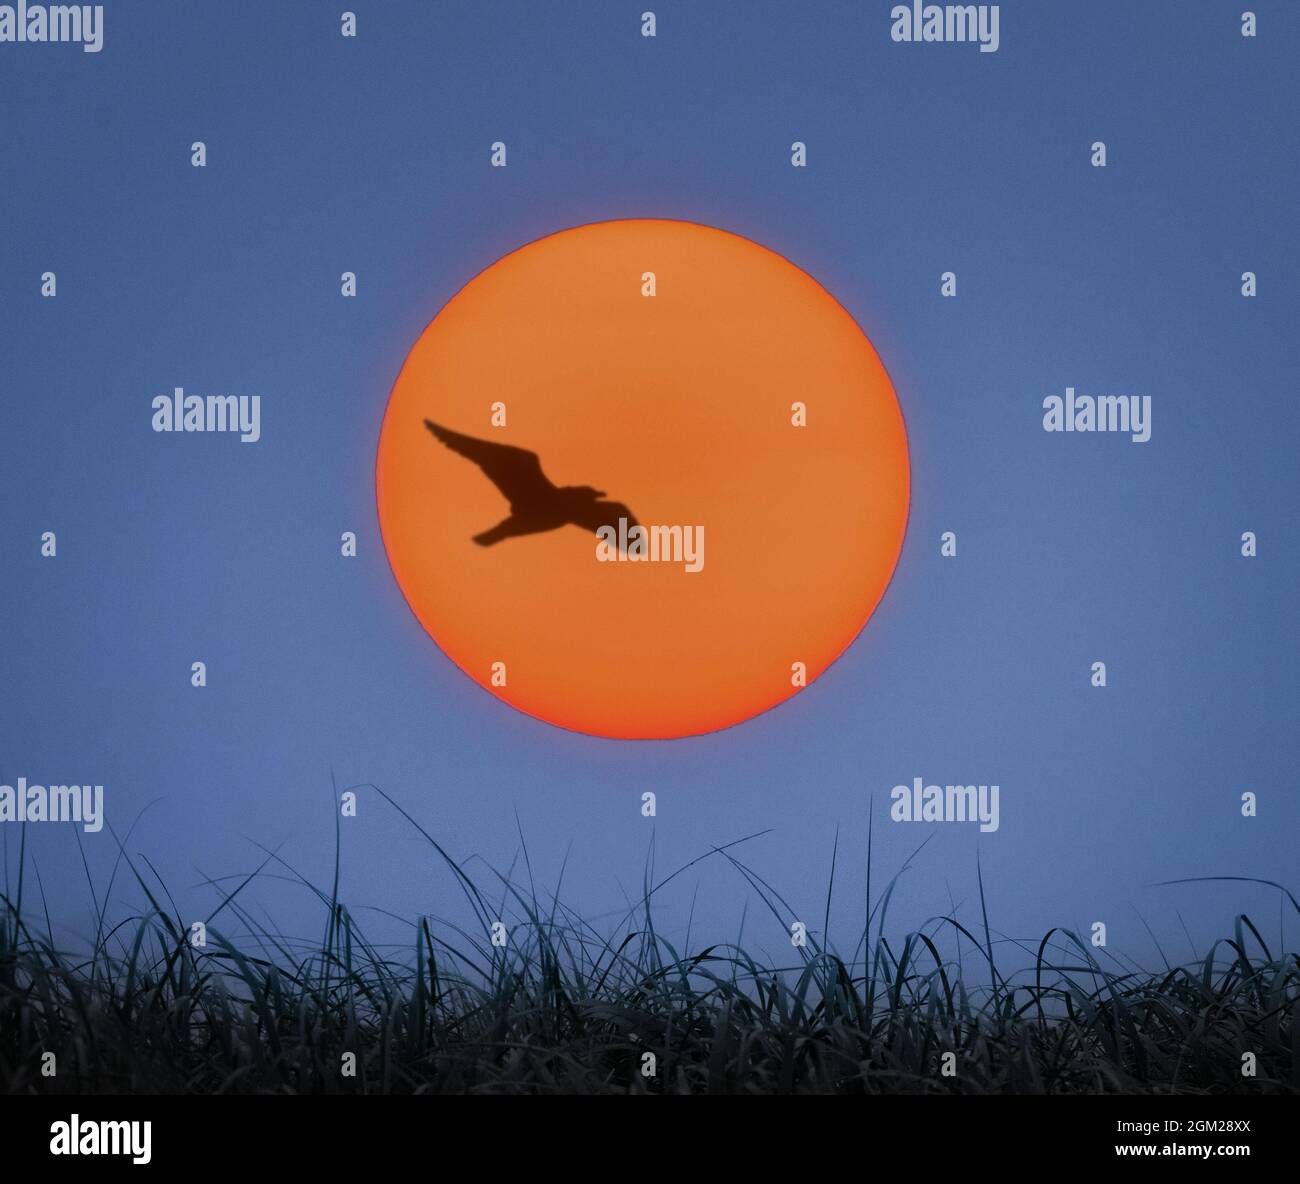 Sonnenaufgang am Ufer - die Sonne geht am Ufer auf, mit Seevögeln, die fliegen und der orangen Sonne entgegensehen. Dieses Bild ist auch als bla verfügbar Stockfoto